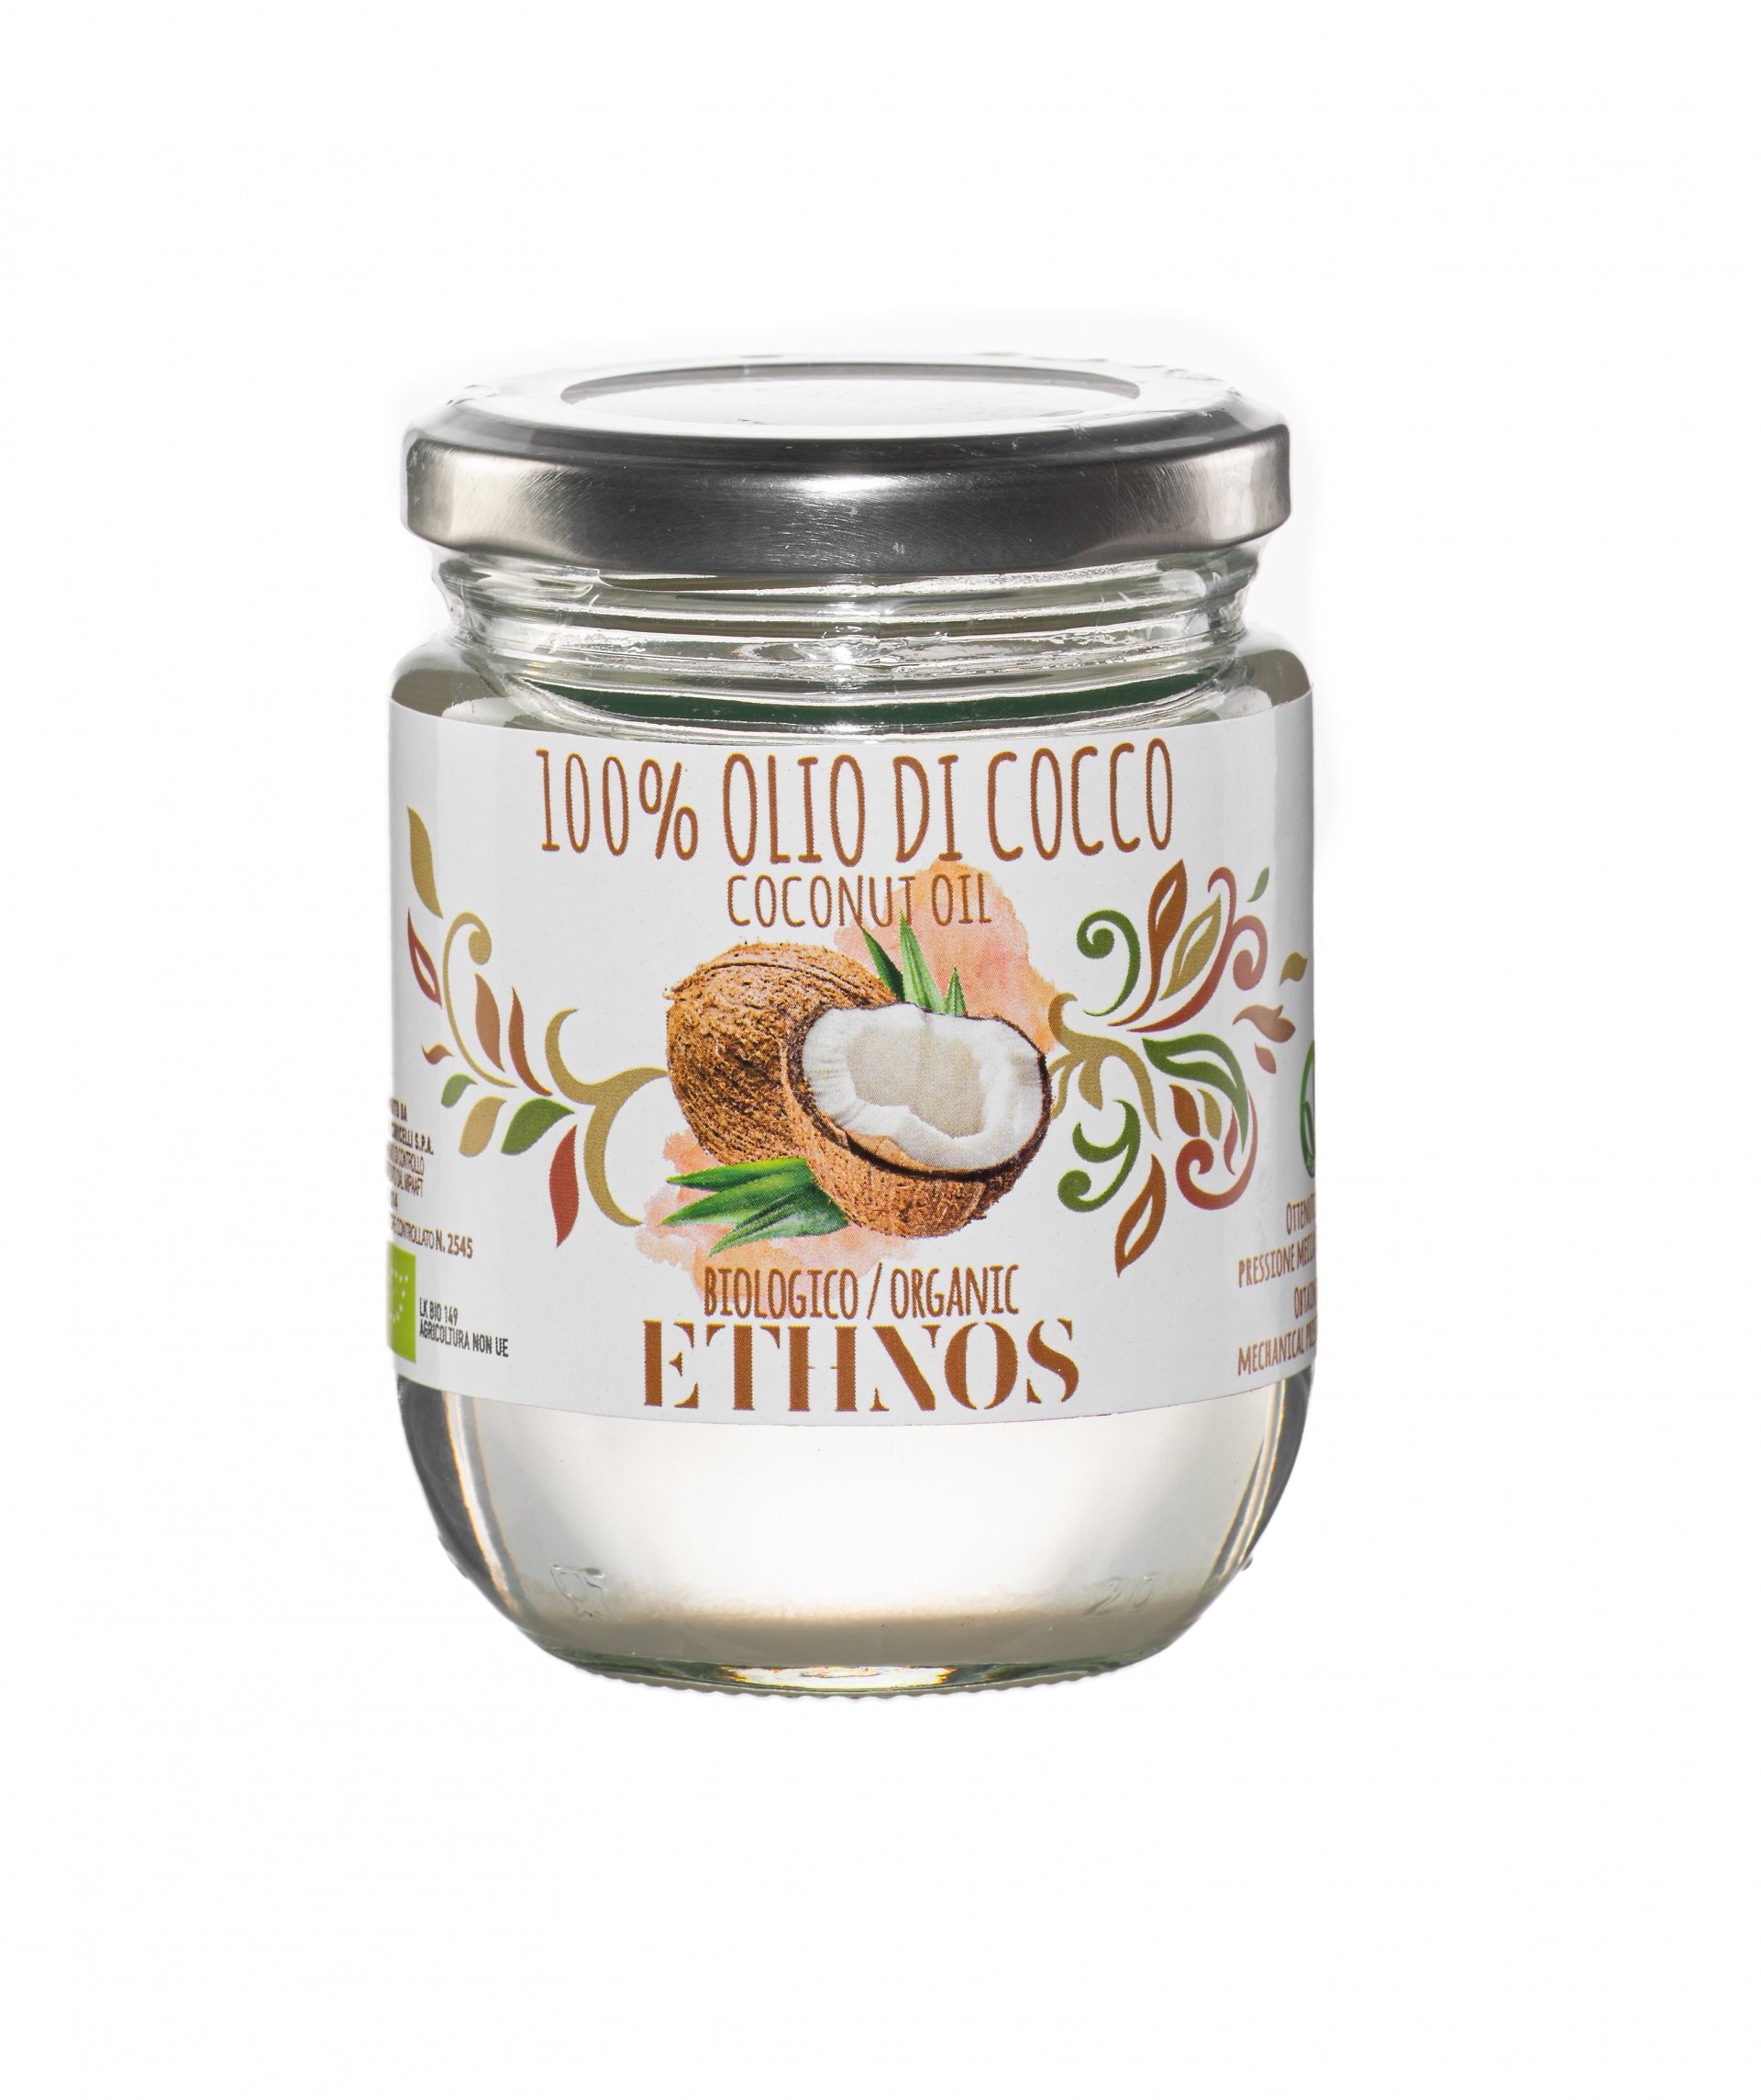 Una piacevole sorpresa l'olio di cocco a marchio Ethnos di Pietro Coricelli